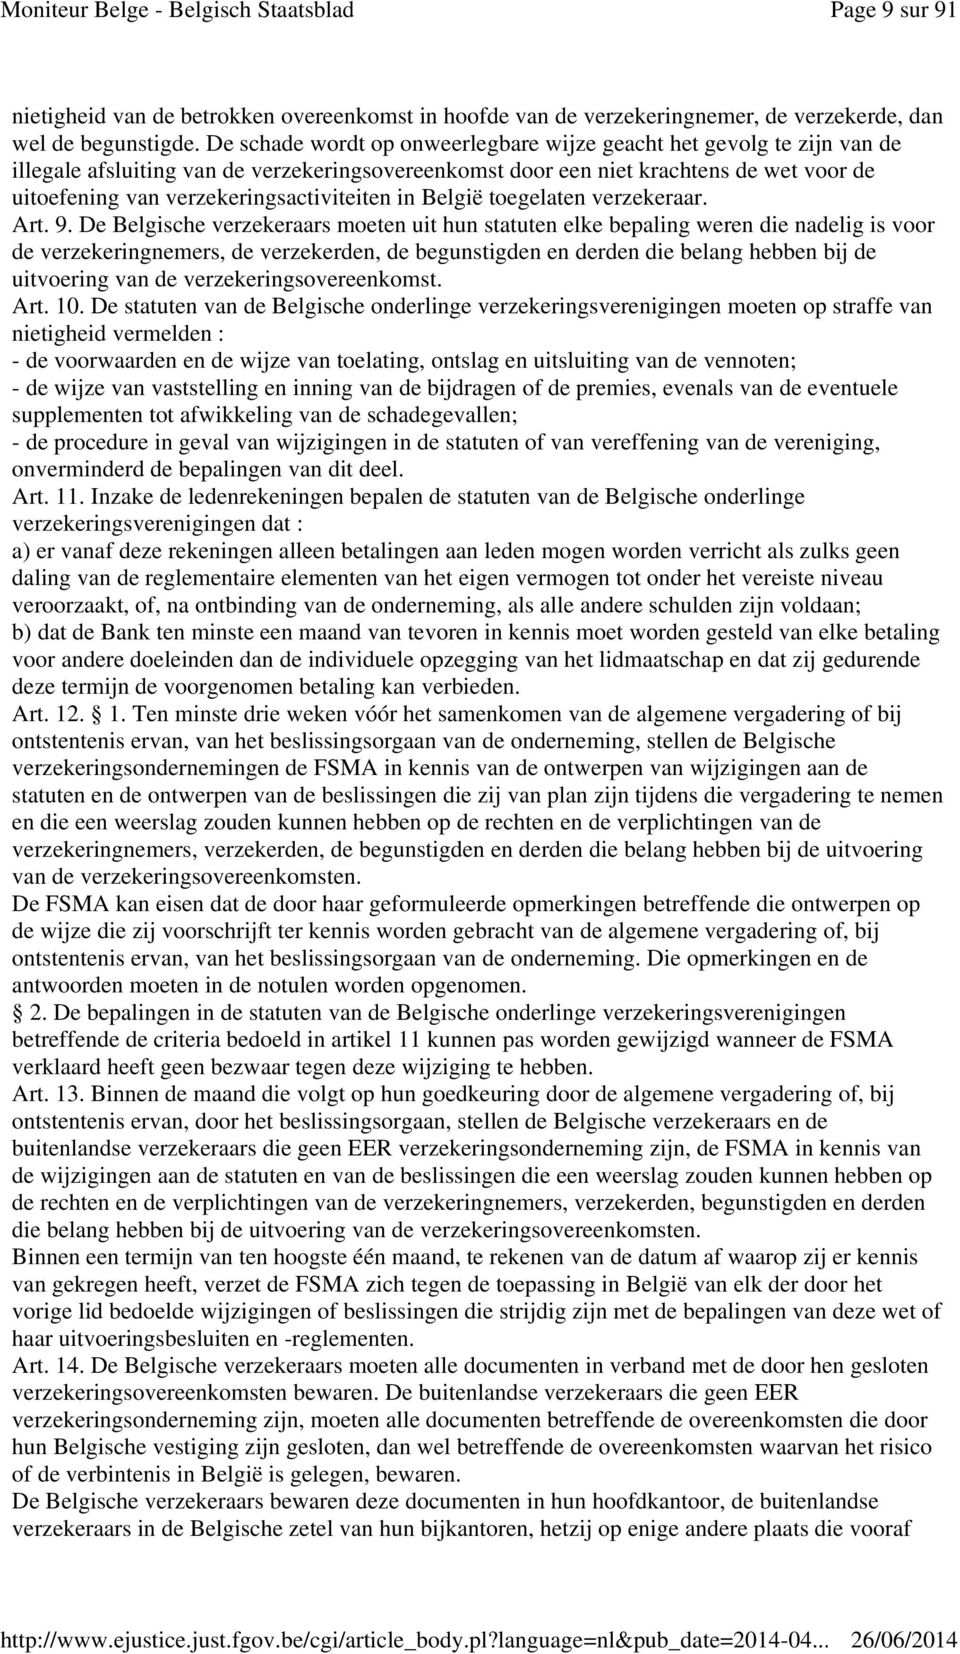 verzekeringsactiviteiten in België toegelaten verzekeraar. Art. 9.